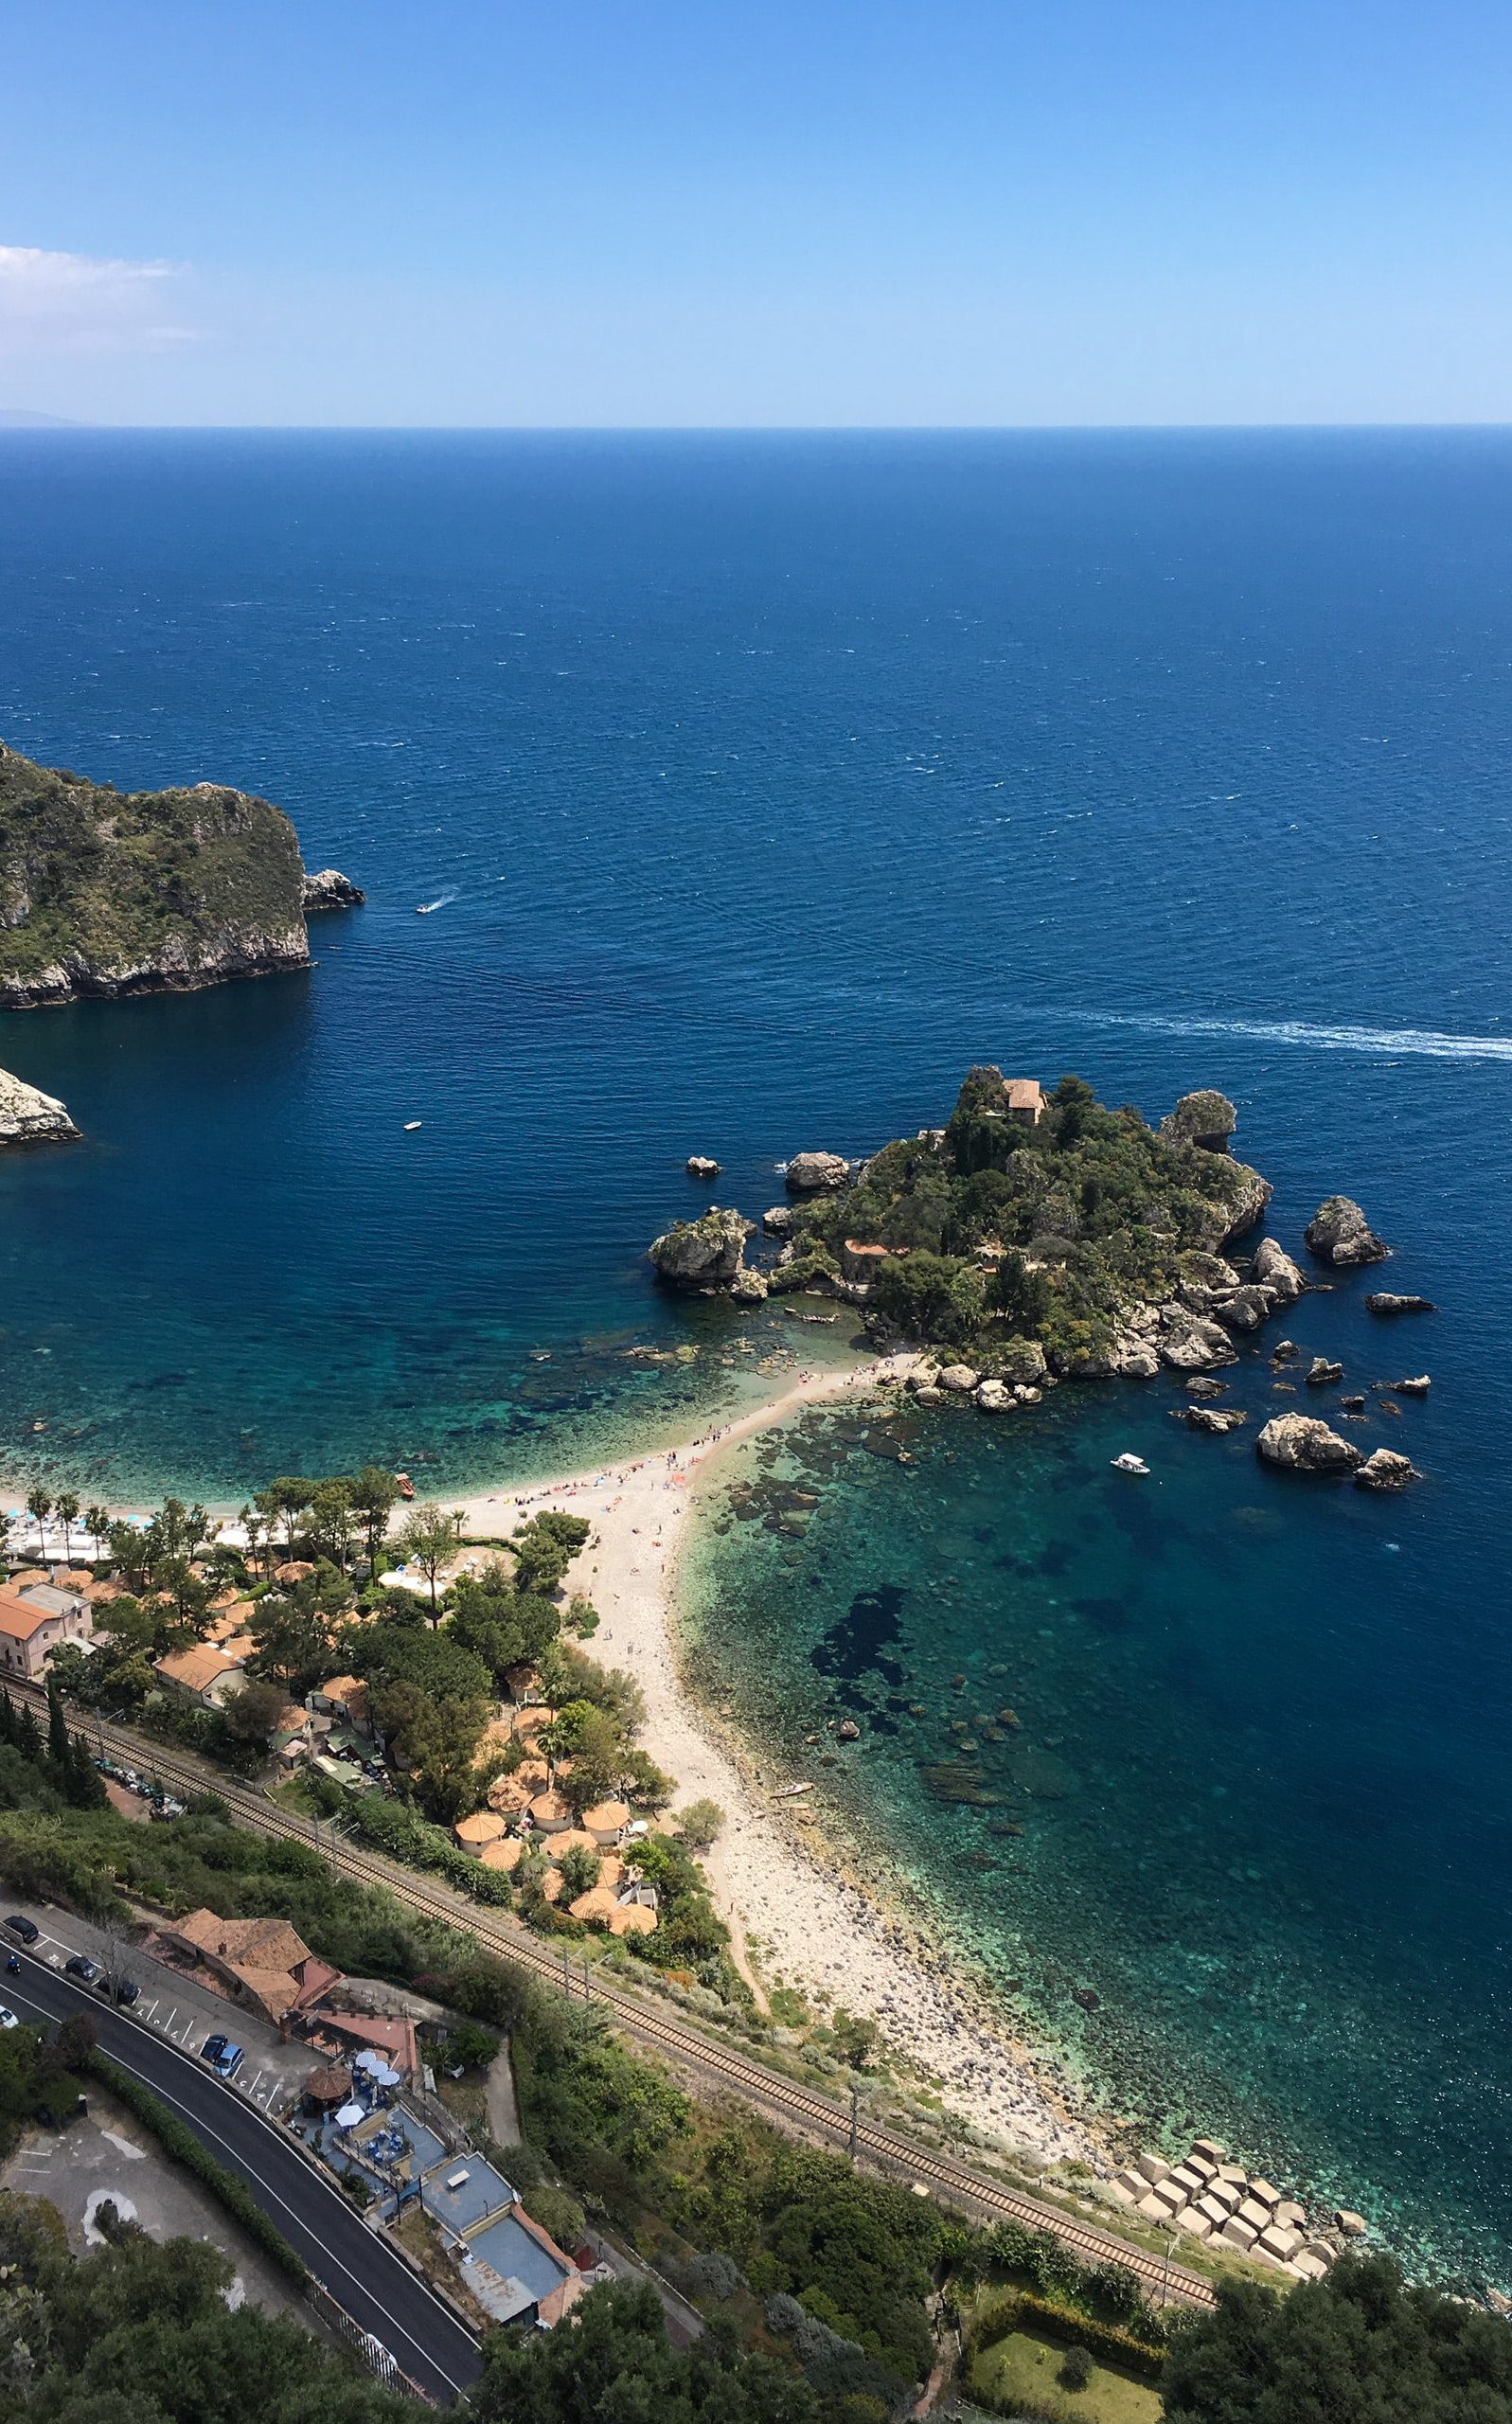 Sicilia tiene una excelente mezcla de cultura, playas y naturaleza